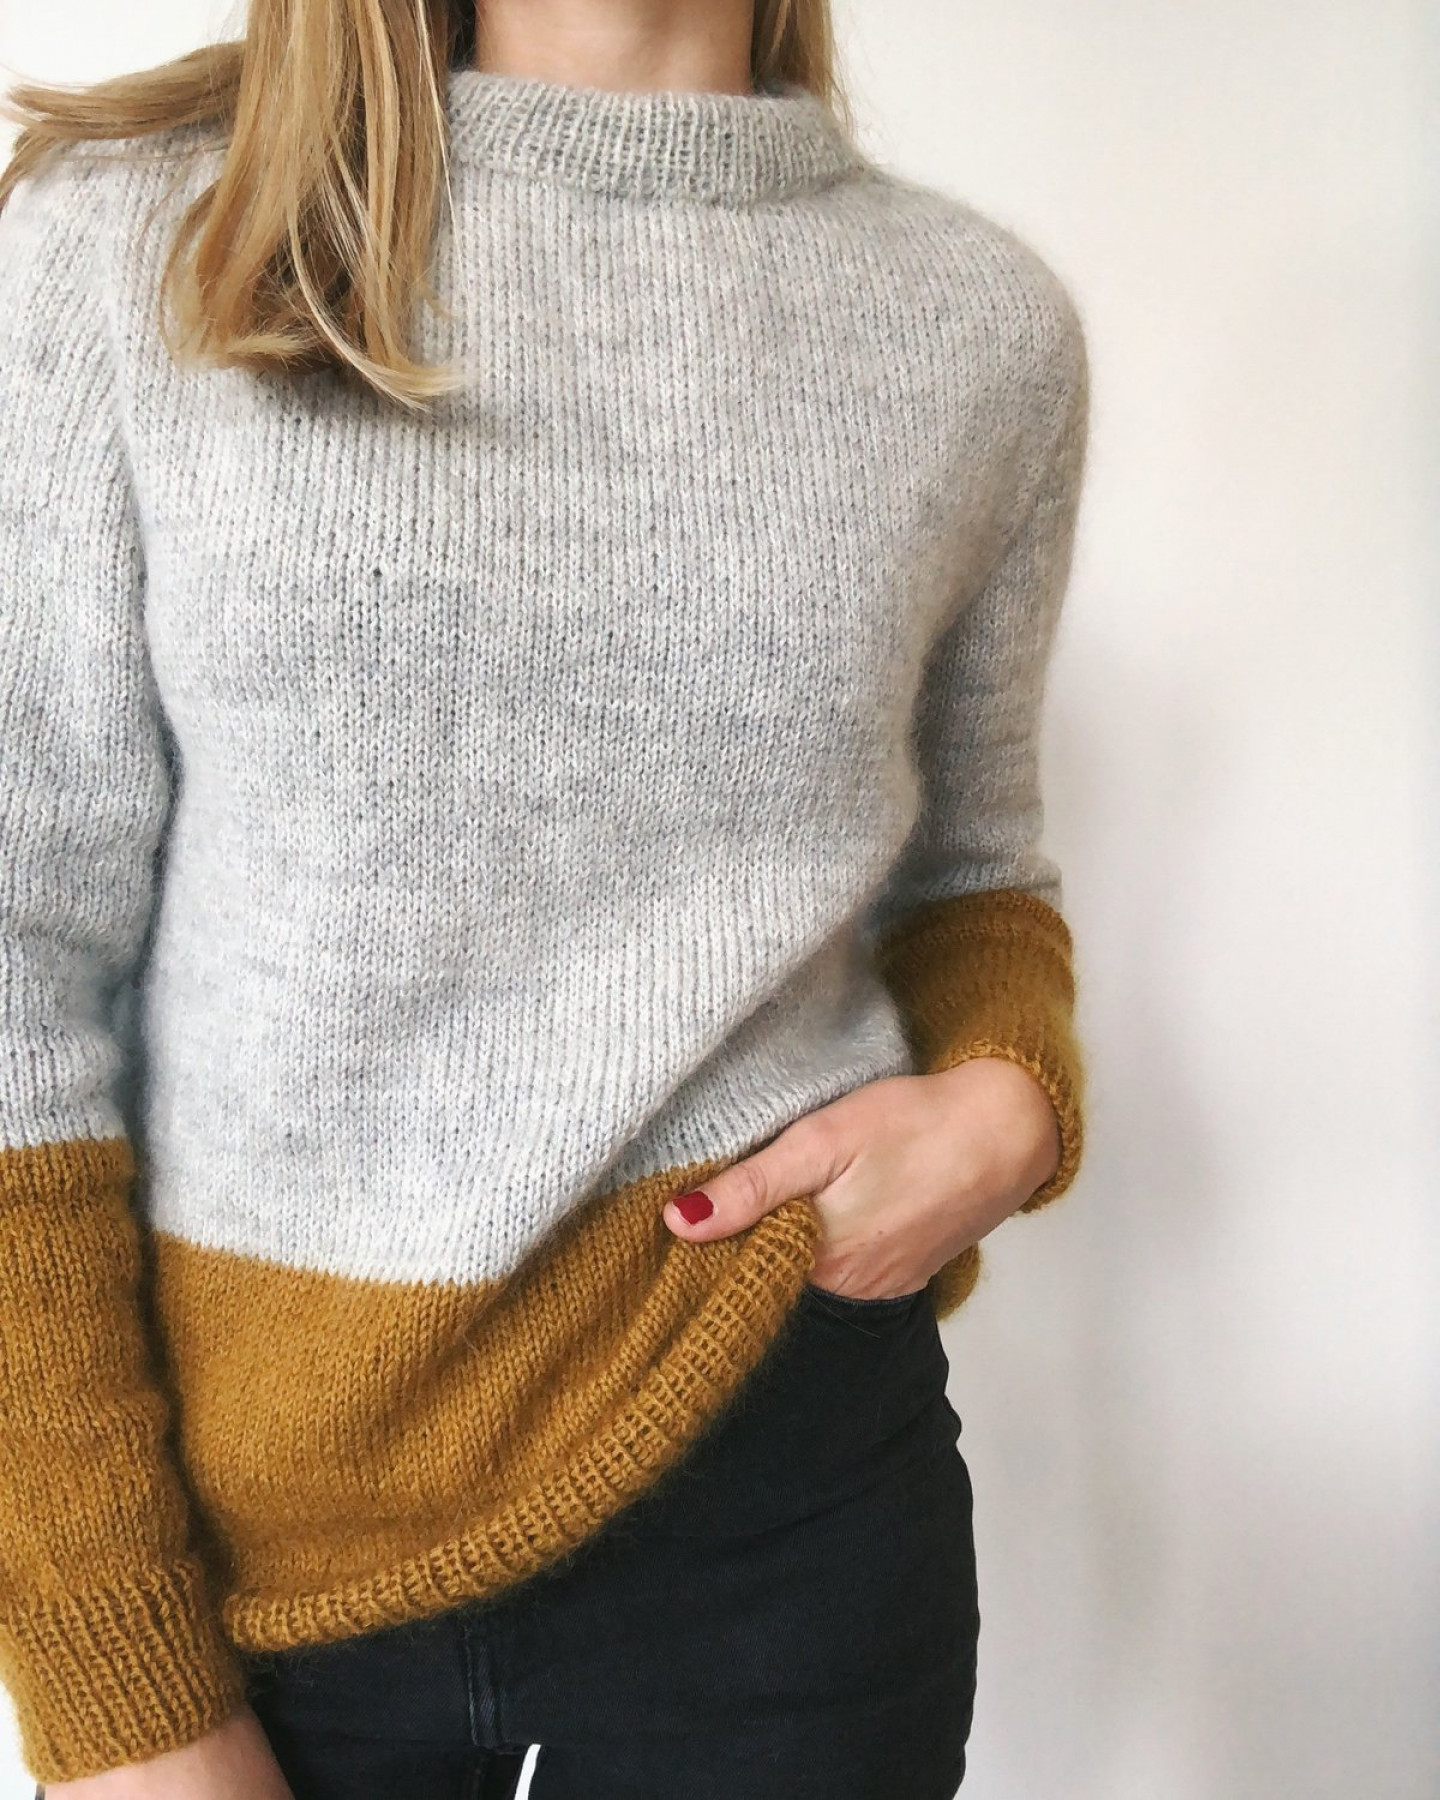 Contrast Sweater Pattern